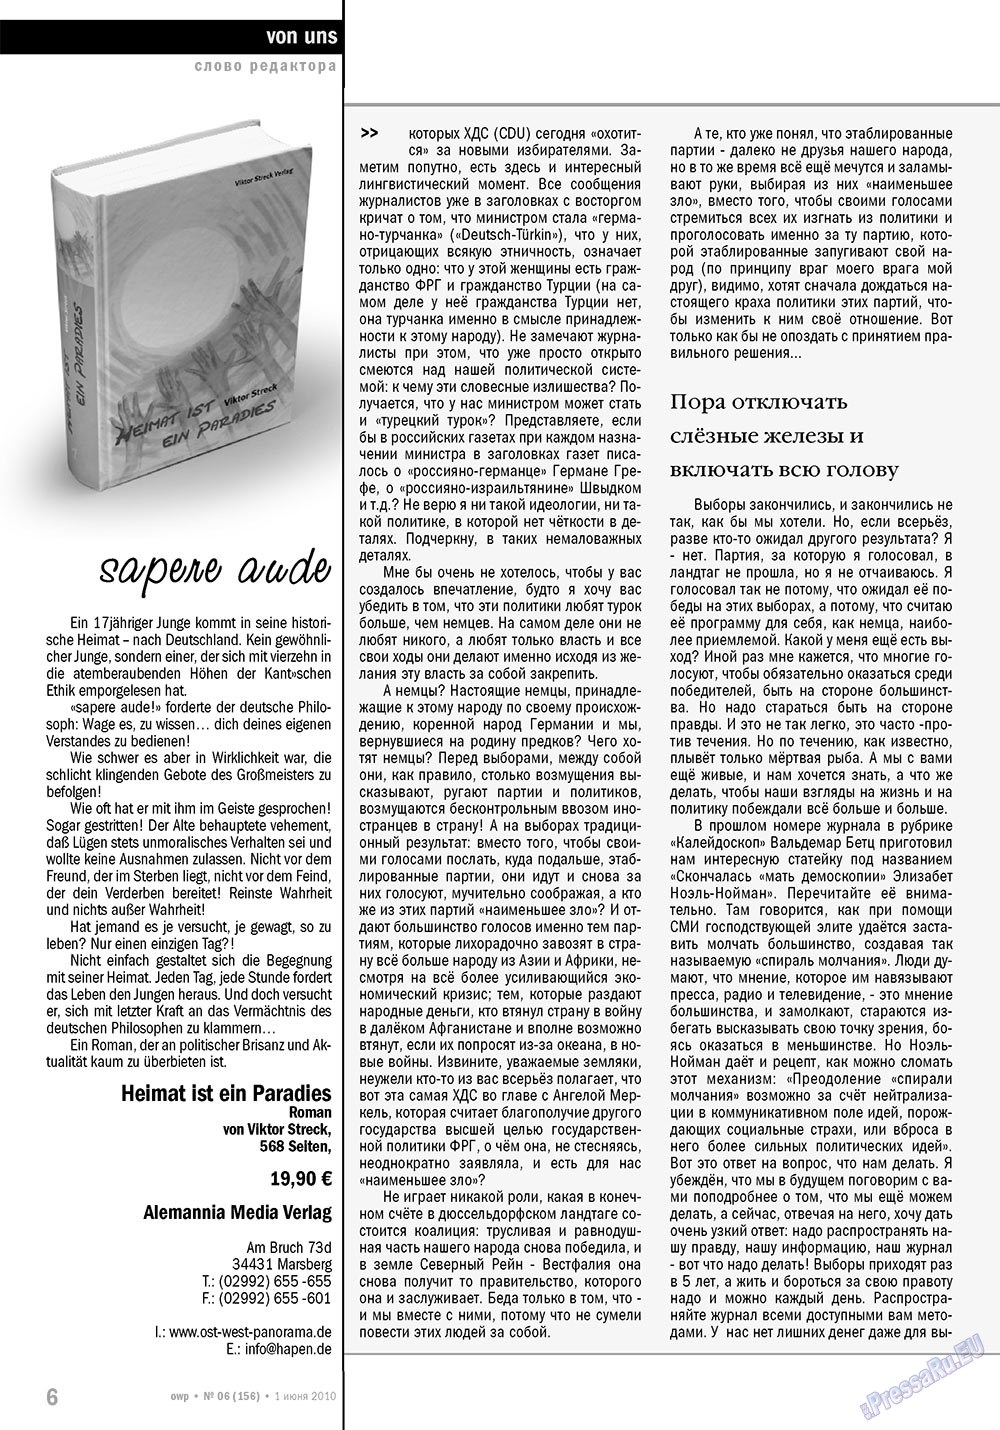 Ost-West Panorama (Zeitschrift). 2010 Jahr, Ausgabe 6, Seite 6